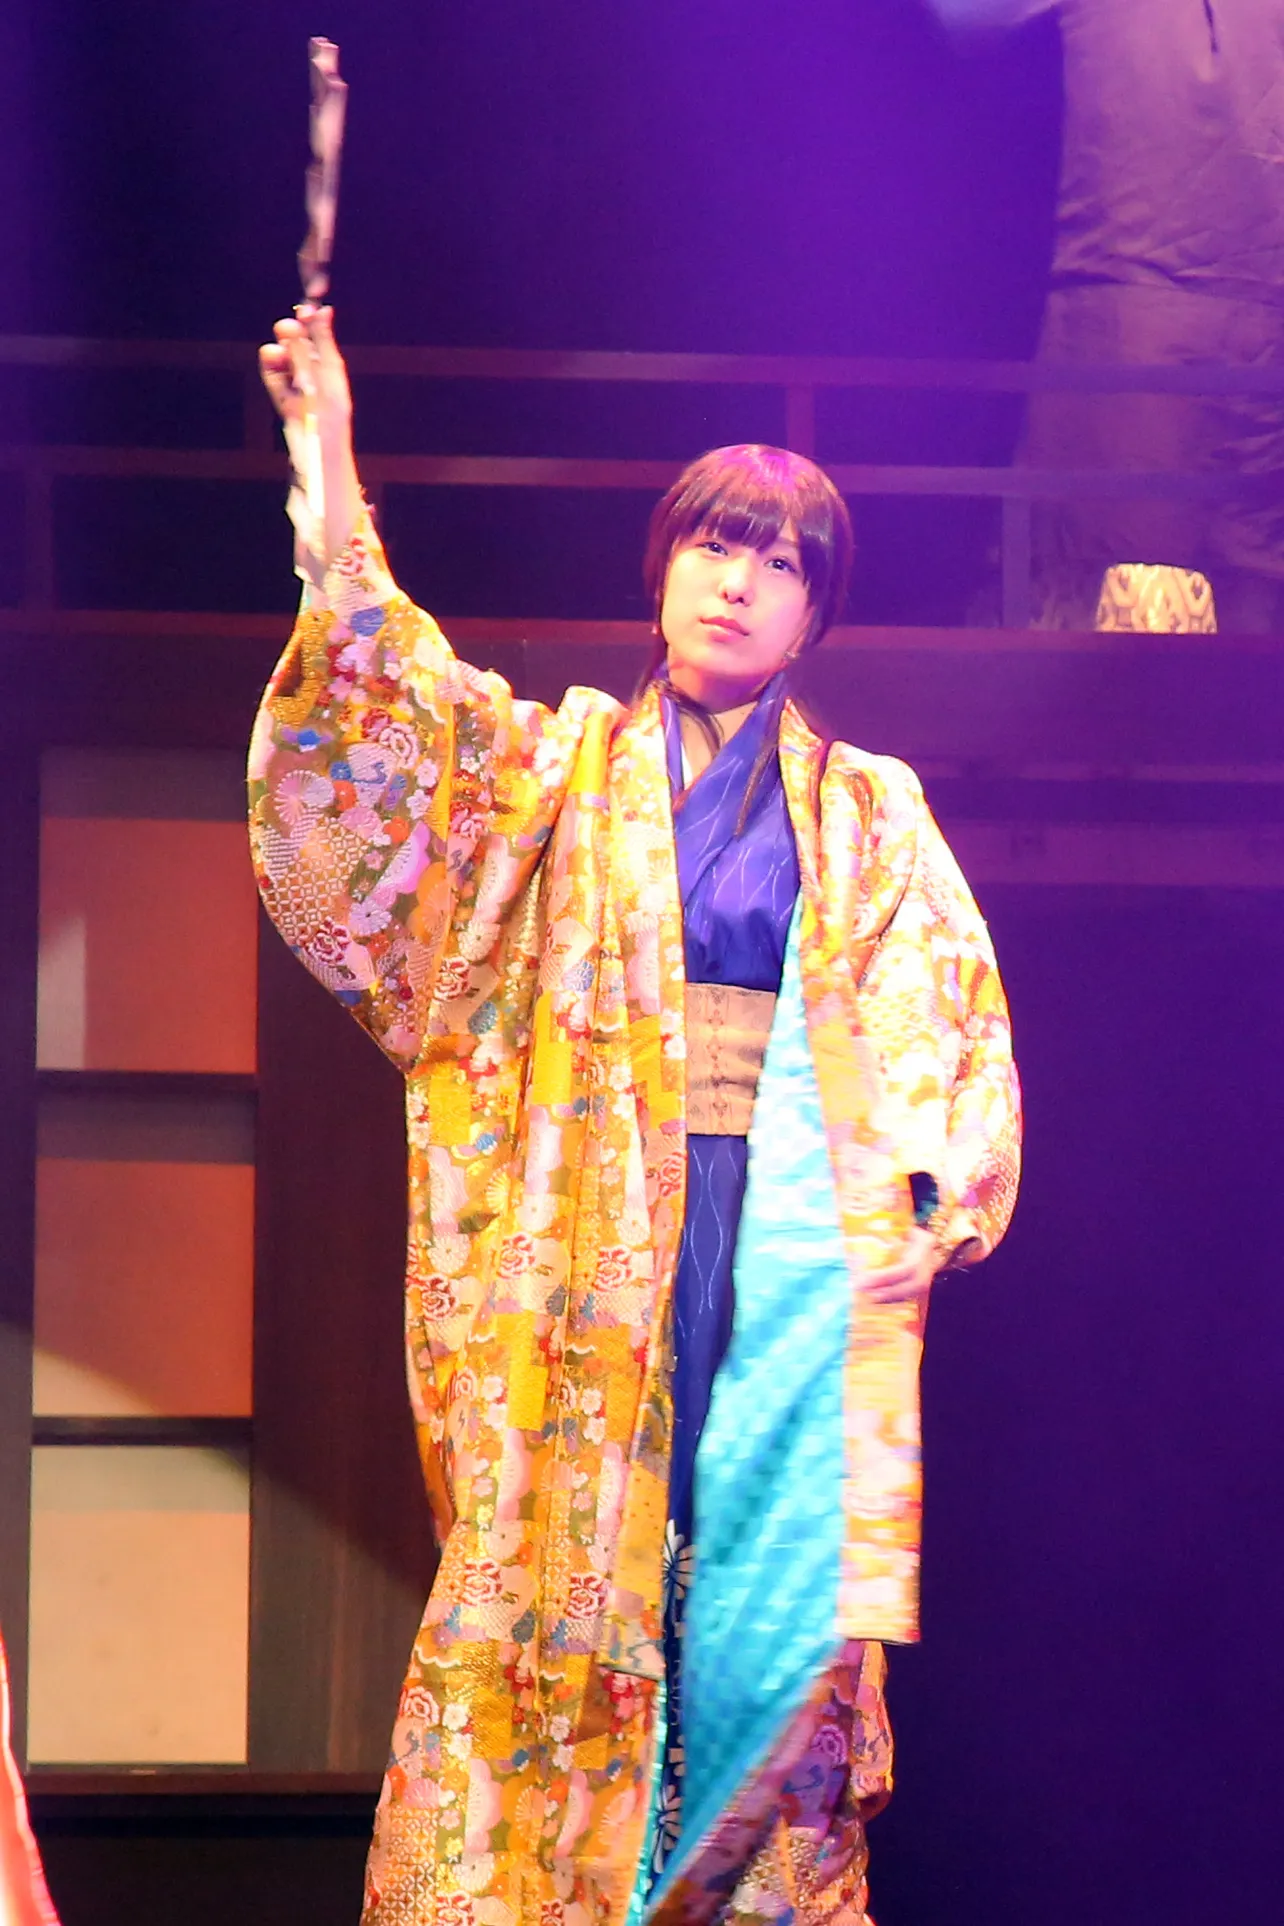 武田勝頼の妻・おりゑを演じたのは8月にAKB48を卒業した小嶋菜月。彼女も舞台出演を重ねている1人だ